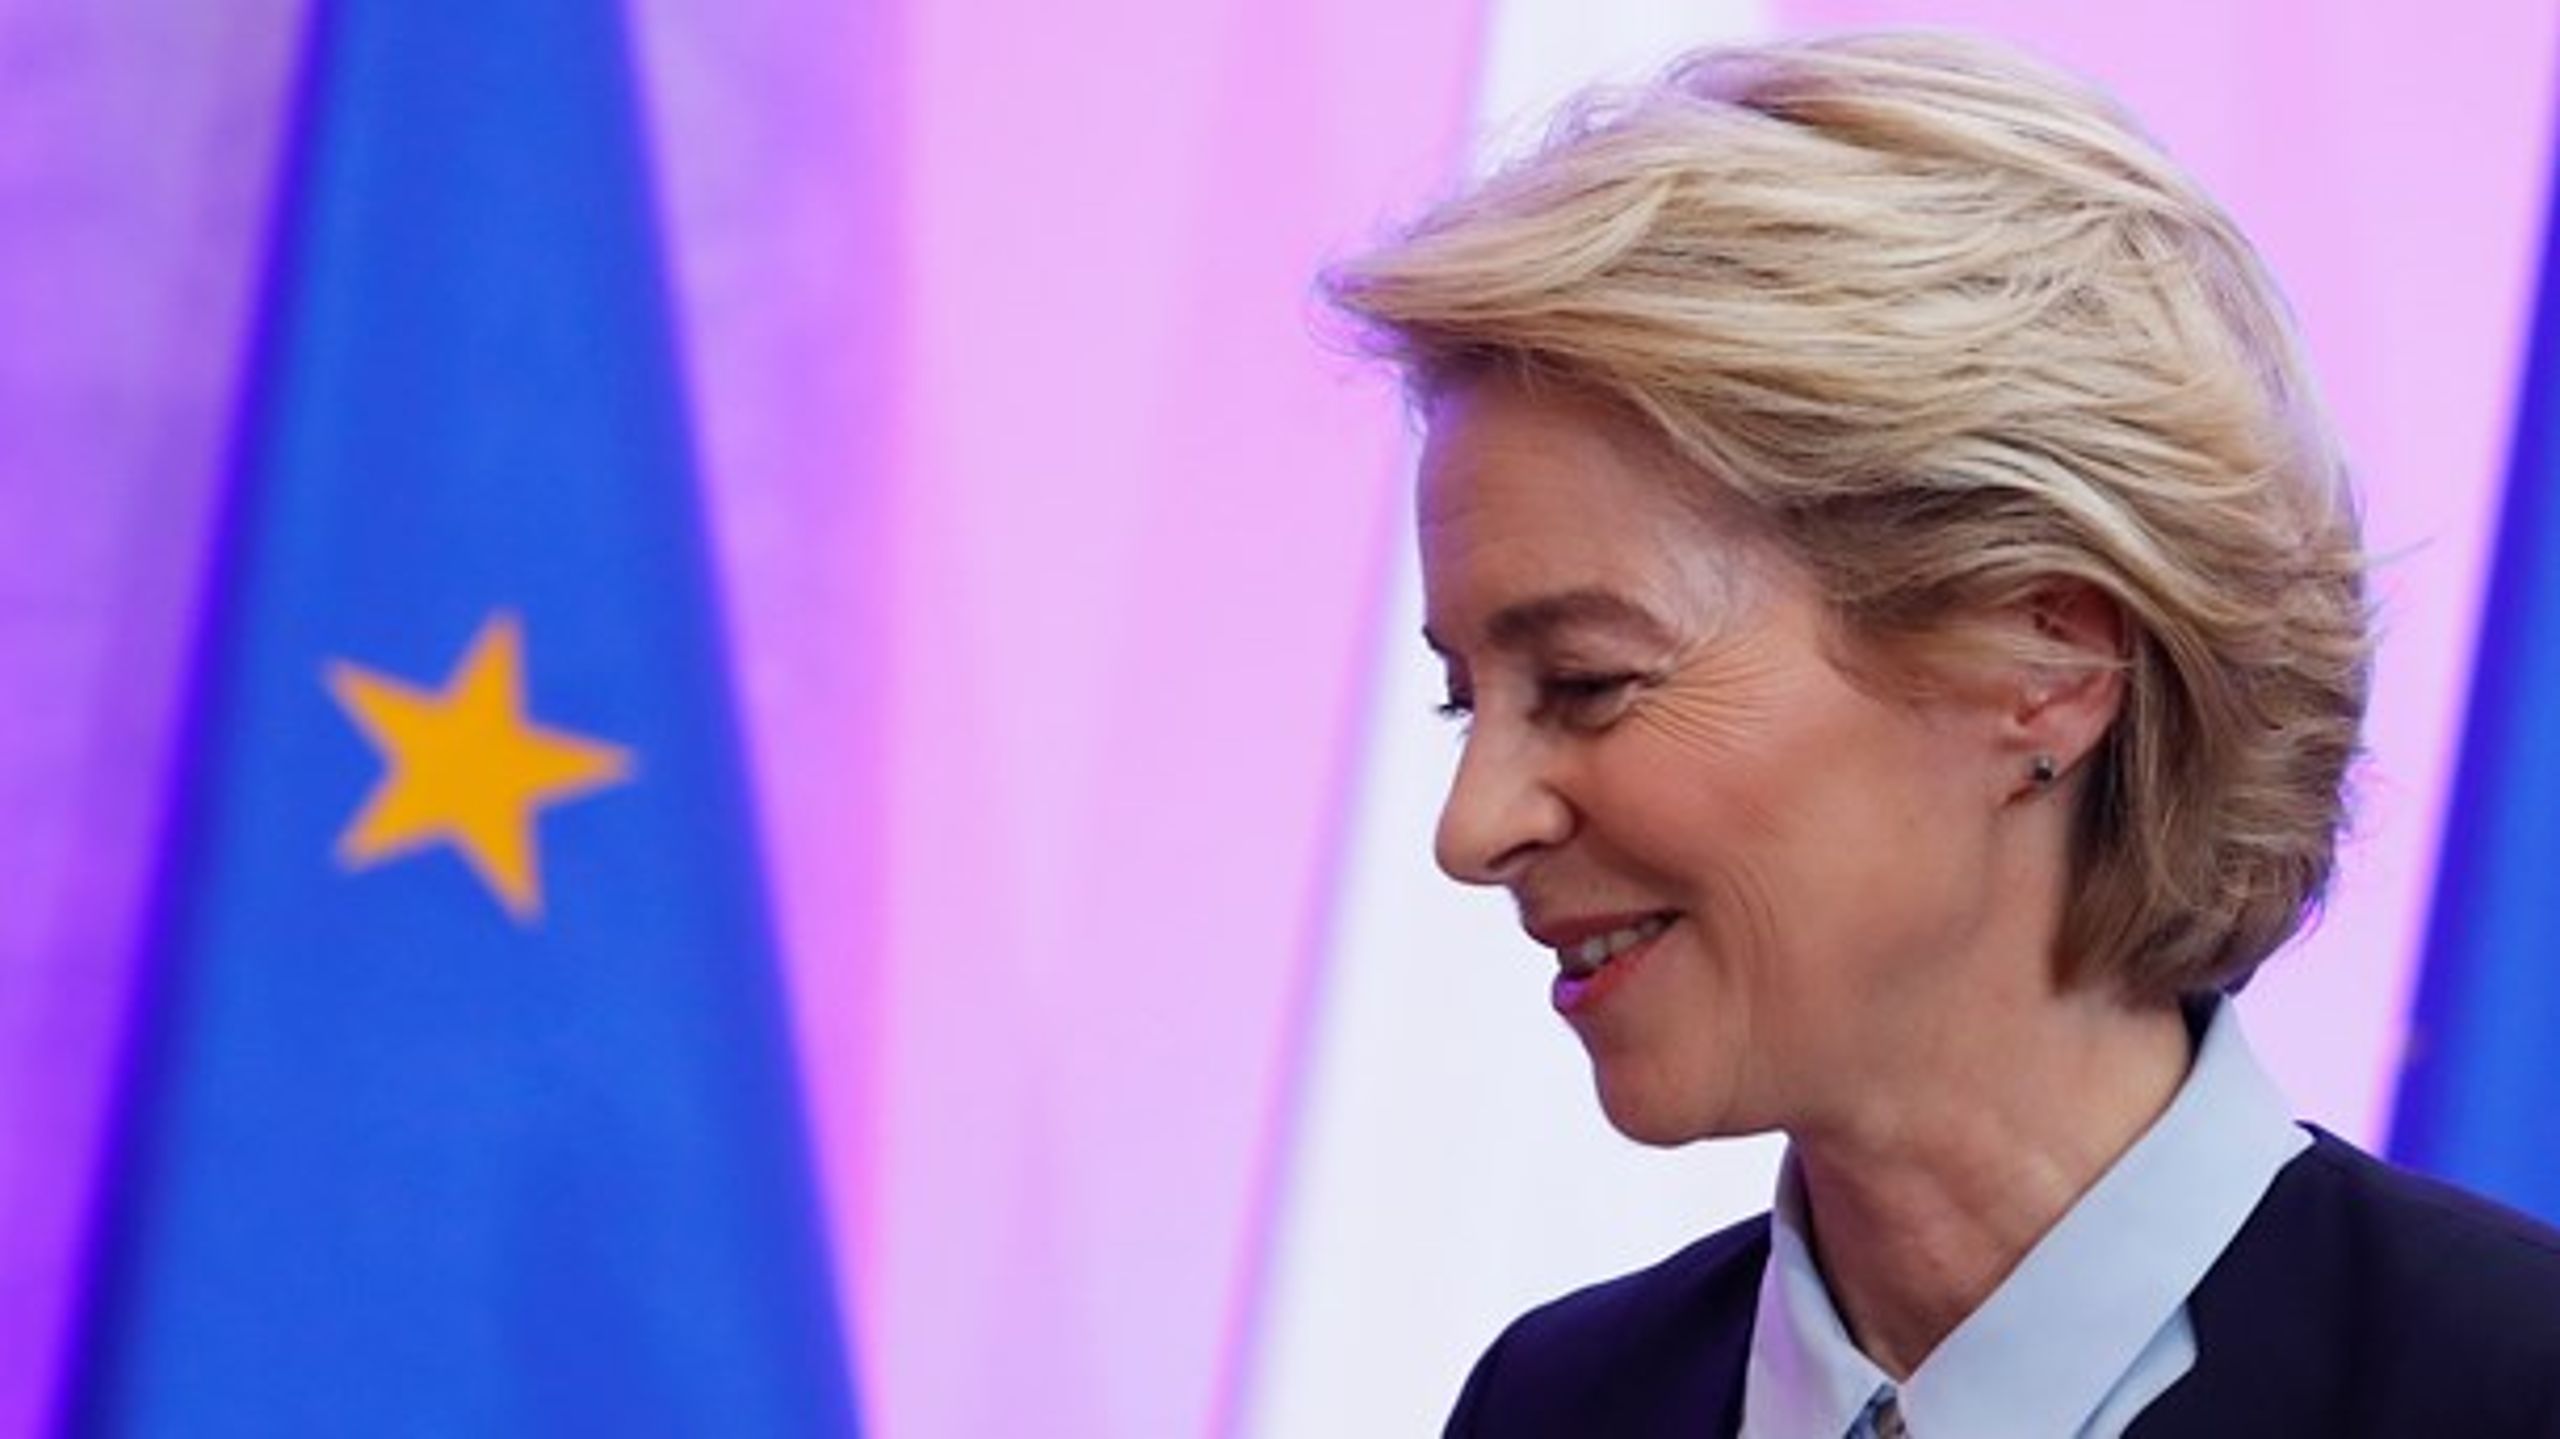 Det tegner til, at den&nbsp;kommende kommissionsformand Ursula von der Leyen kan indfri sin målsætning om en kønsbalance i EU-Kommissionen.